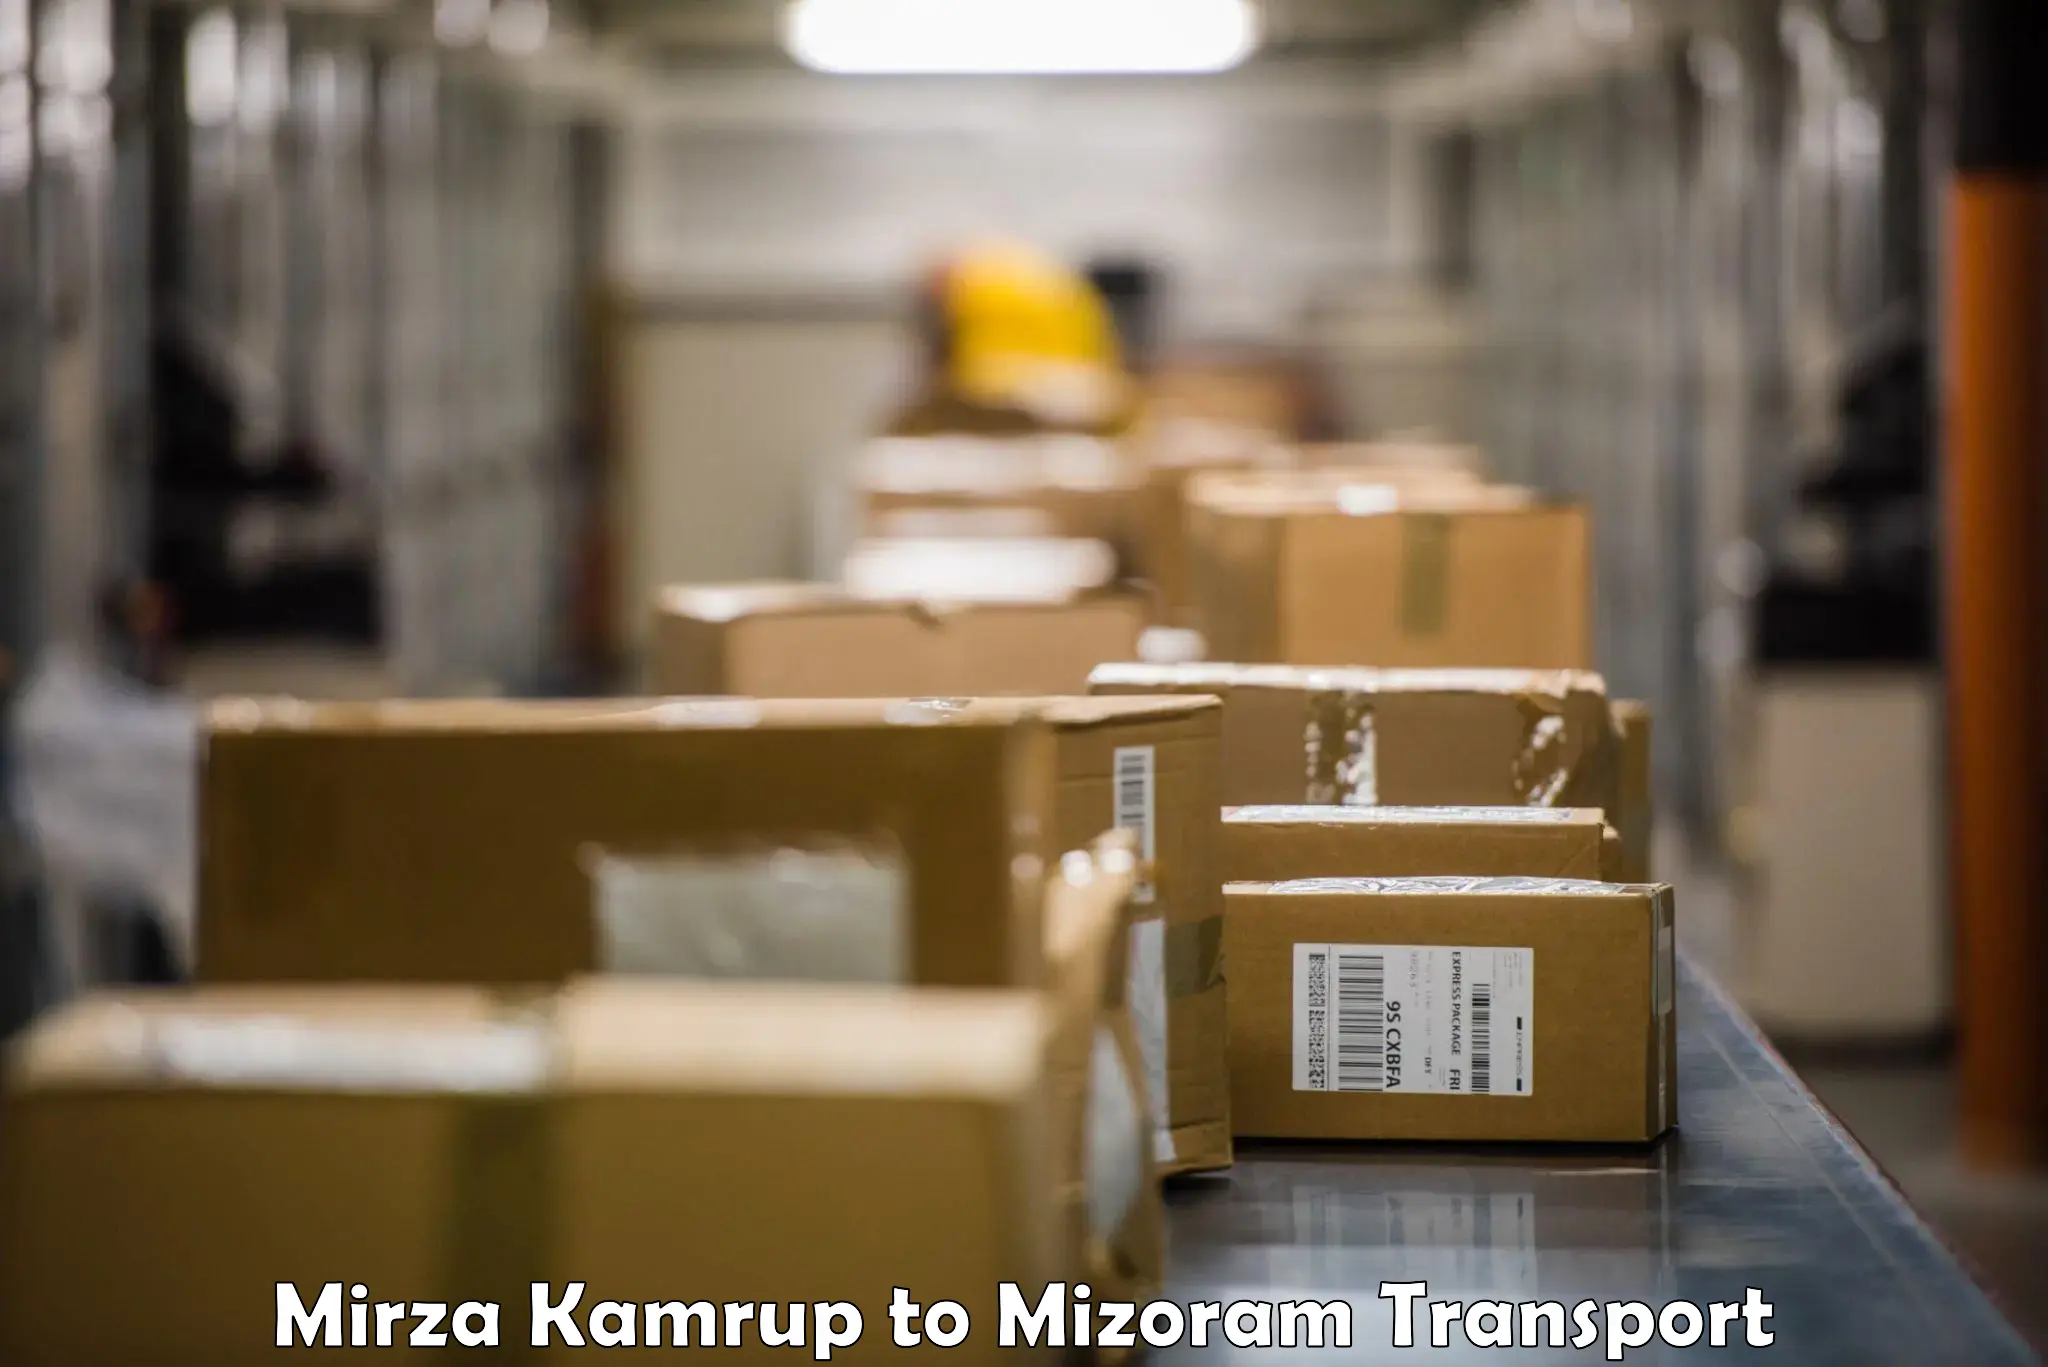 Daily transport service Mirza Kamrup to Aizawl